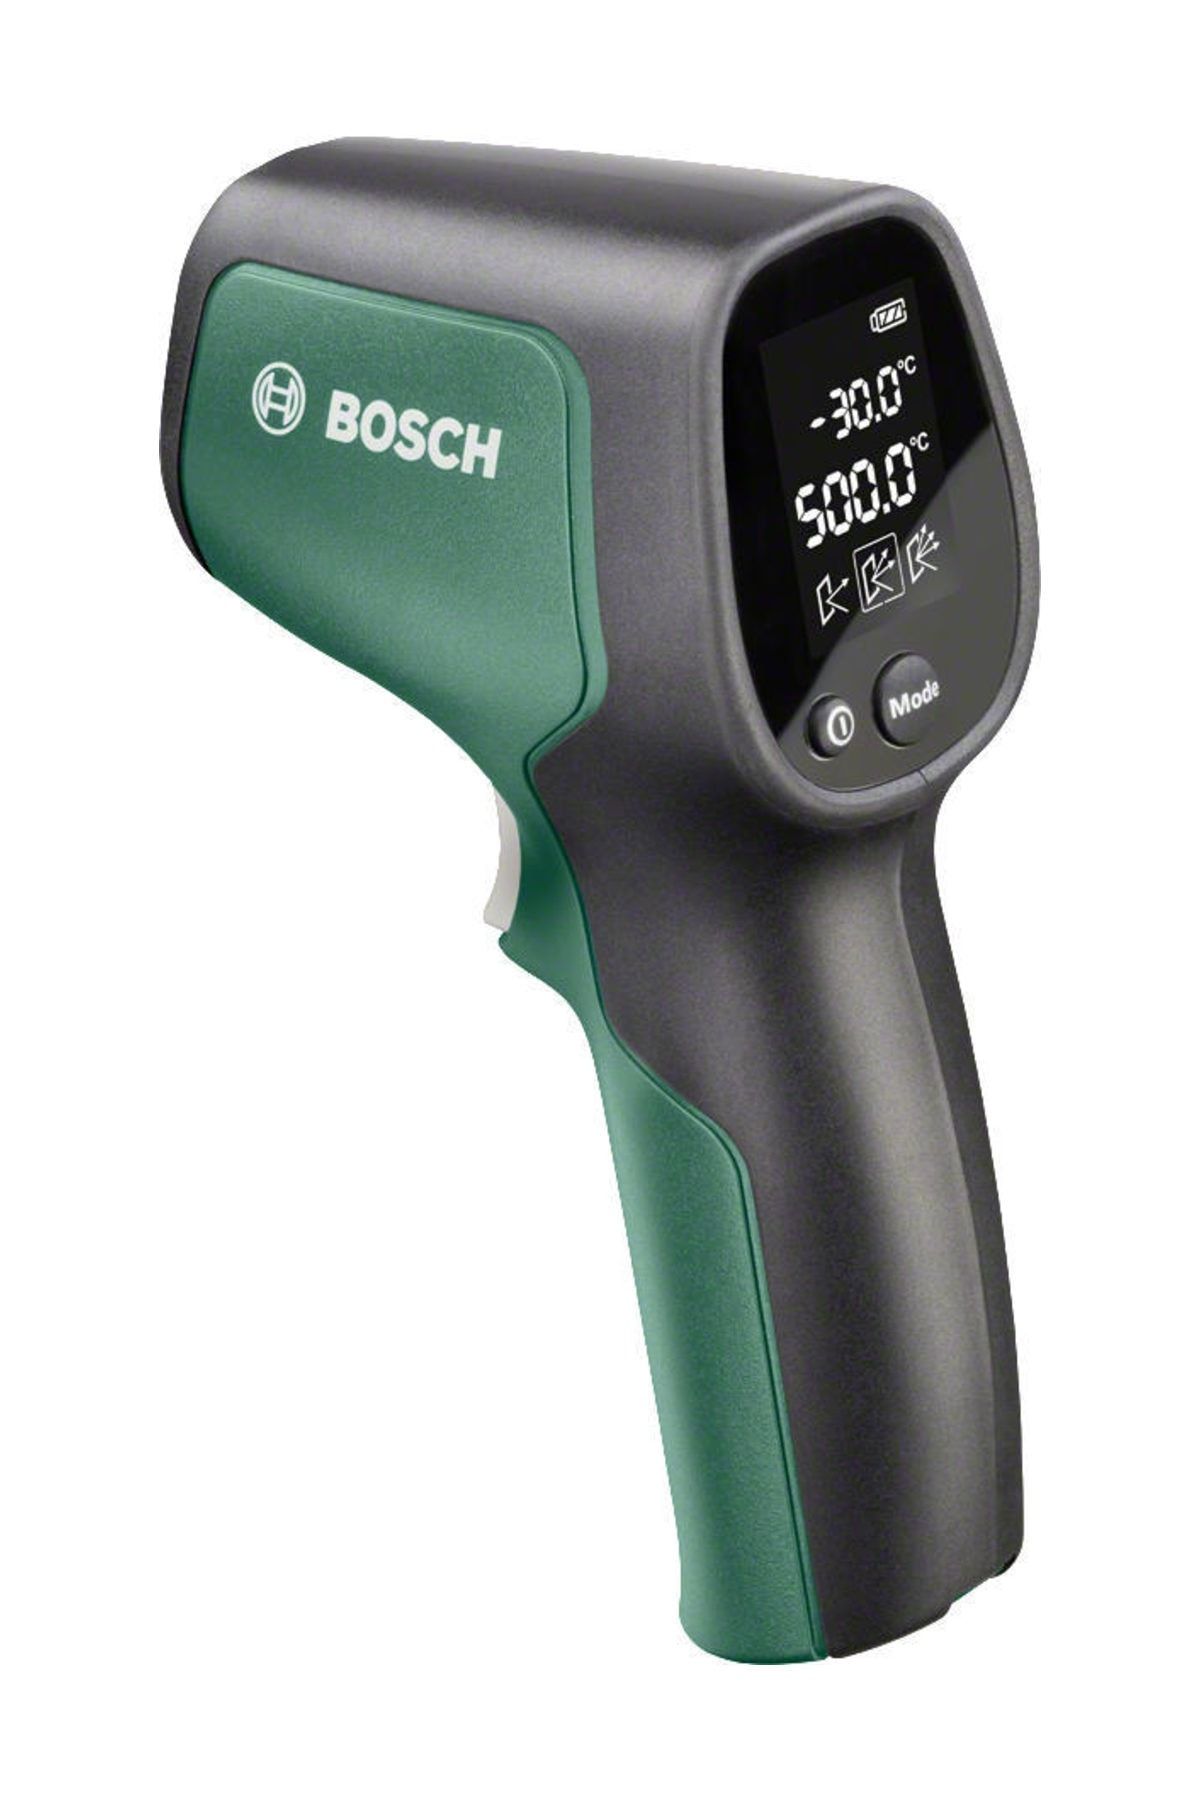 Цена temp. Пирометр Bosch Universal Temp. Пирометр (бесконтактный термометр) Bosch PTD 1 (0603683020). Пирометр (бесконтактный термометр) Bosch GIS 1000 C (0601083301). Термодетектор Bosch.